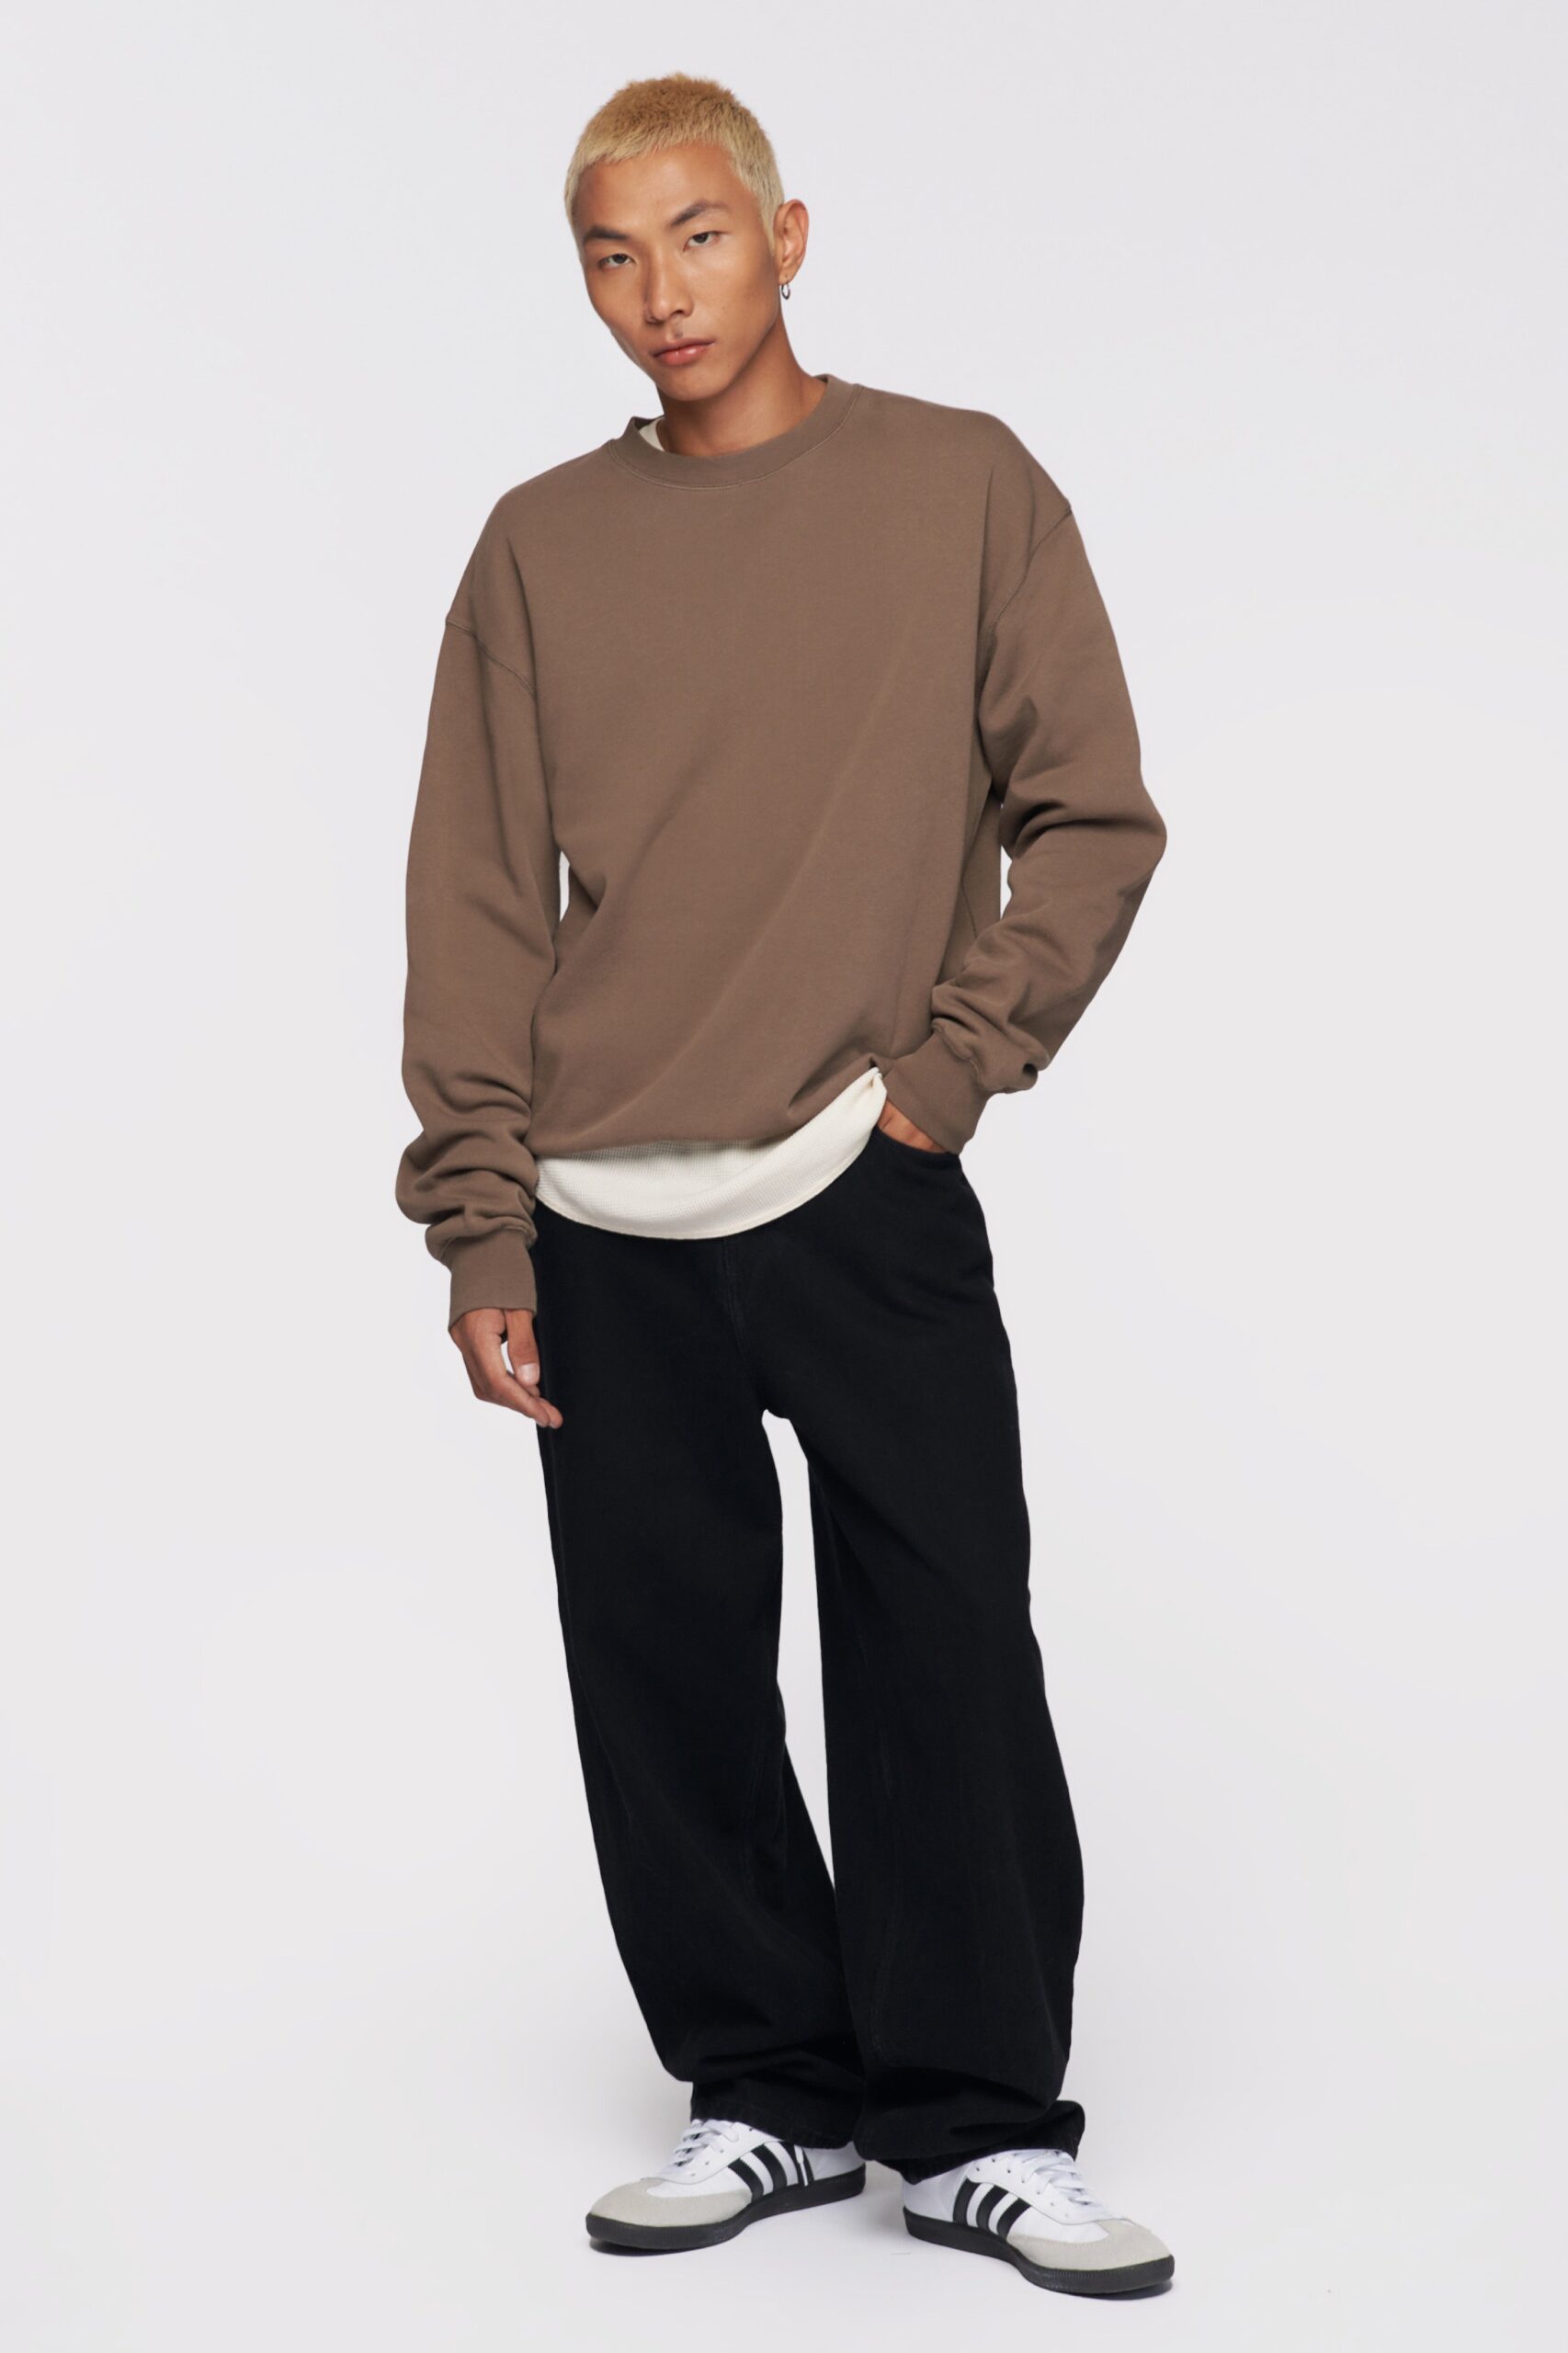 Kotn Men&#8217;s Essential Sweatshirt in Truffle